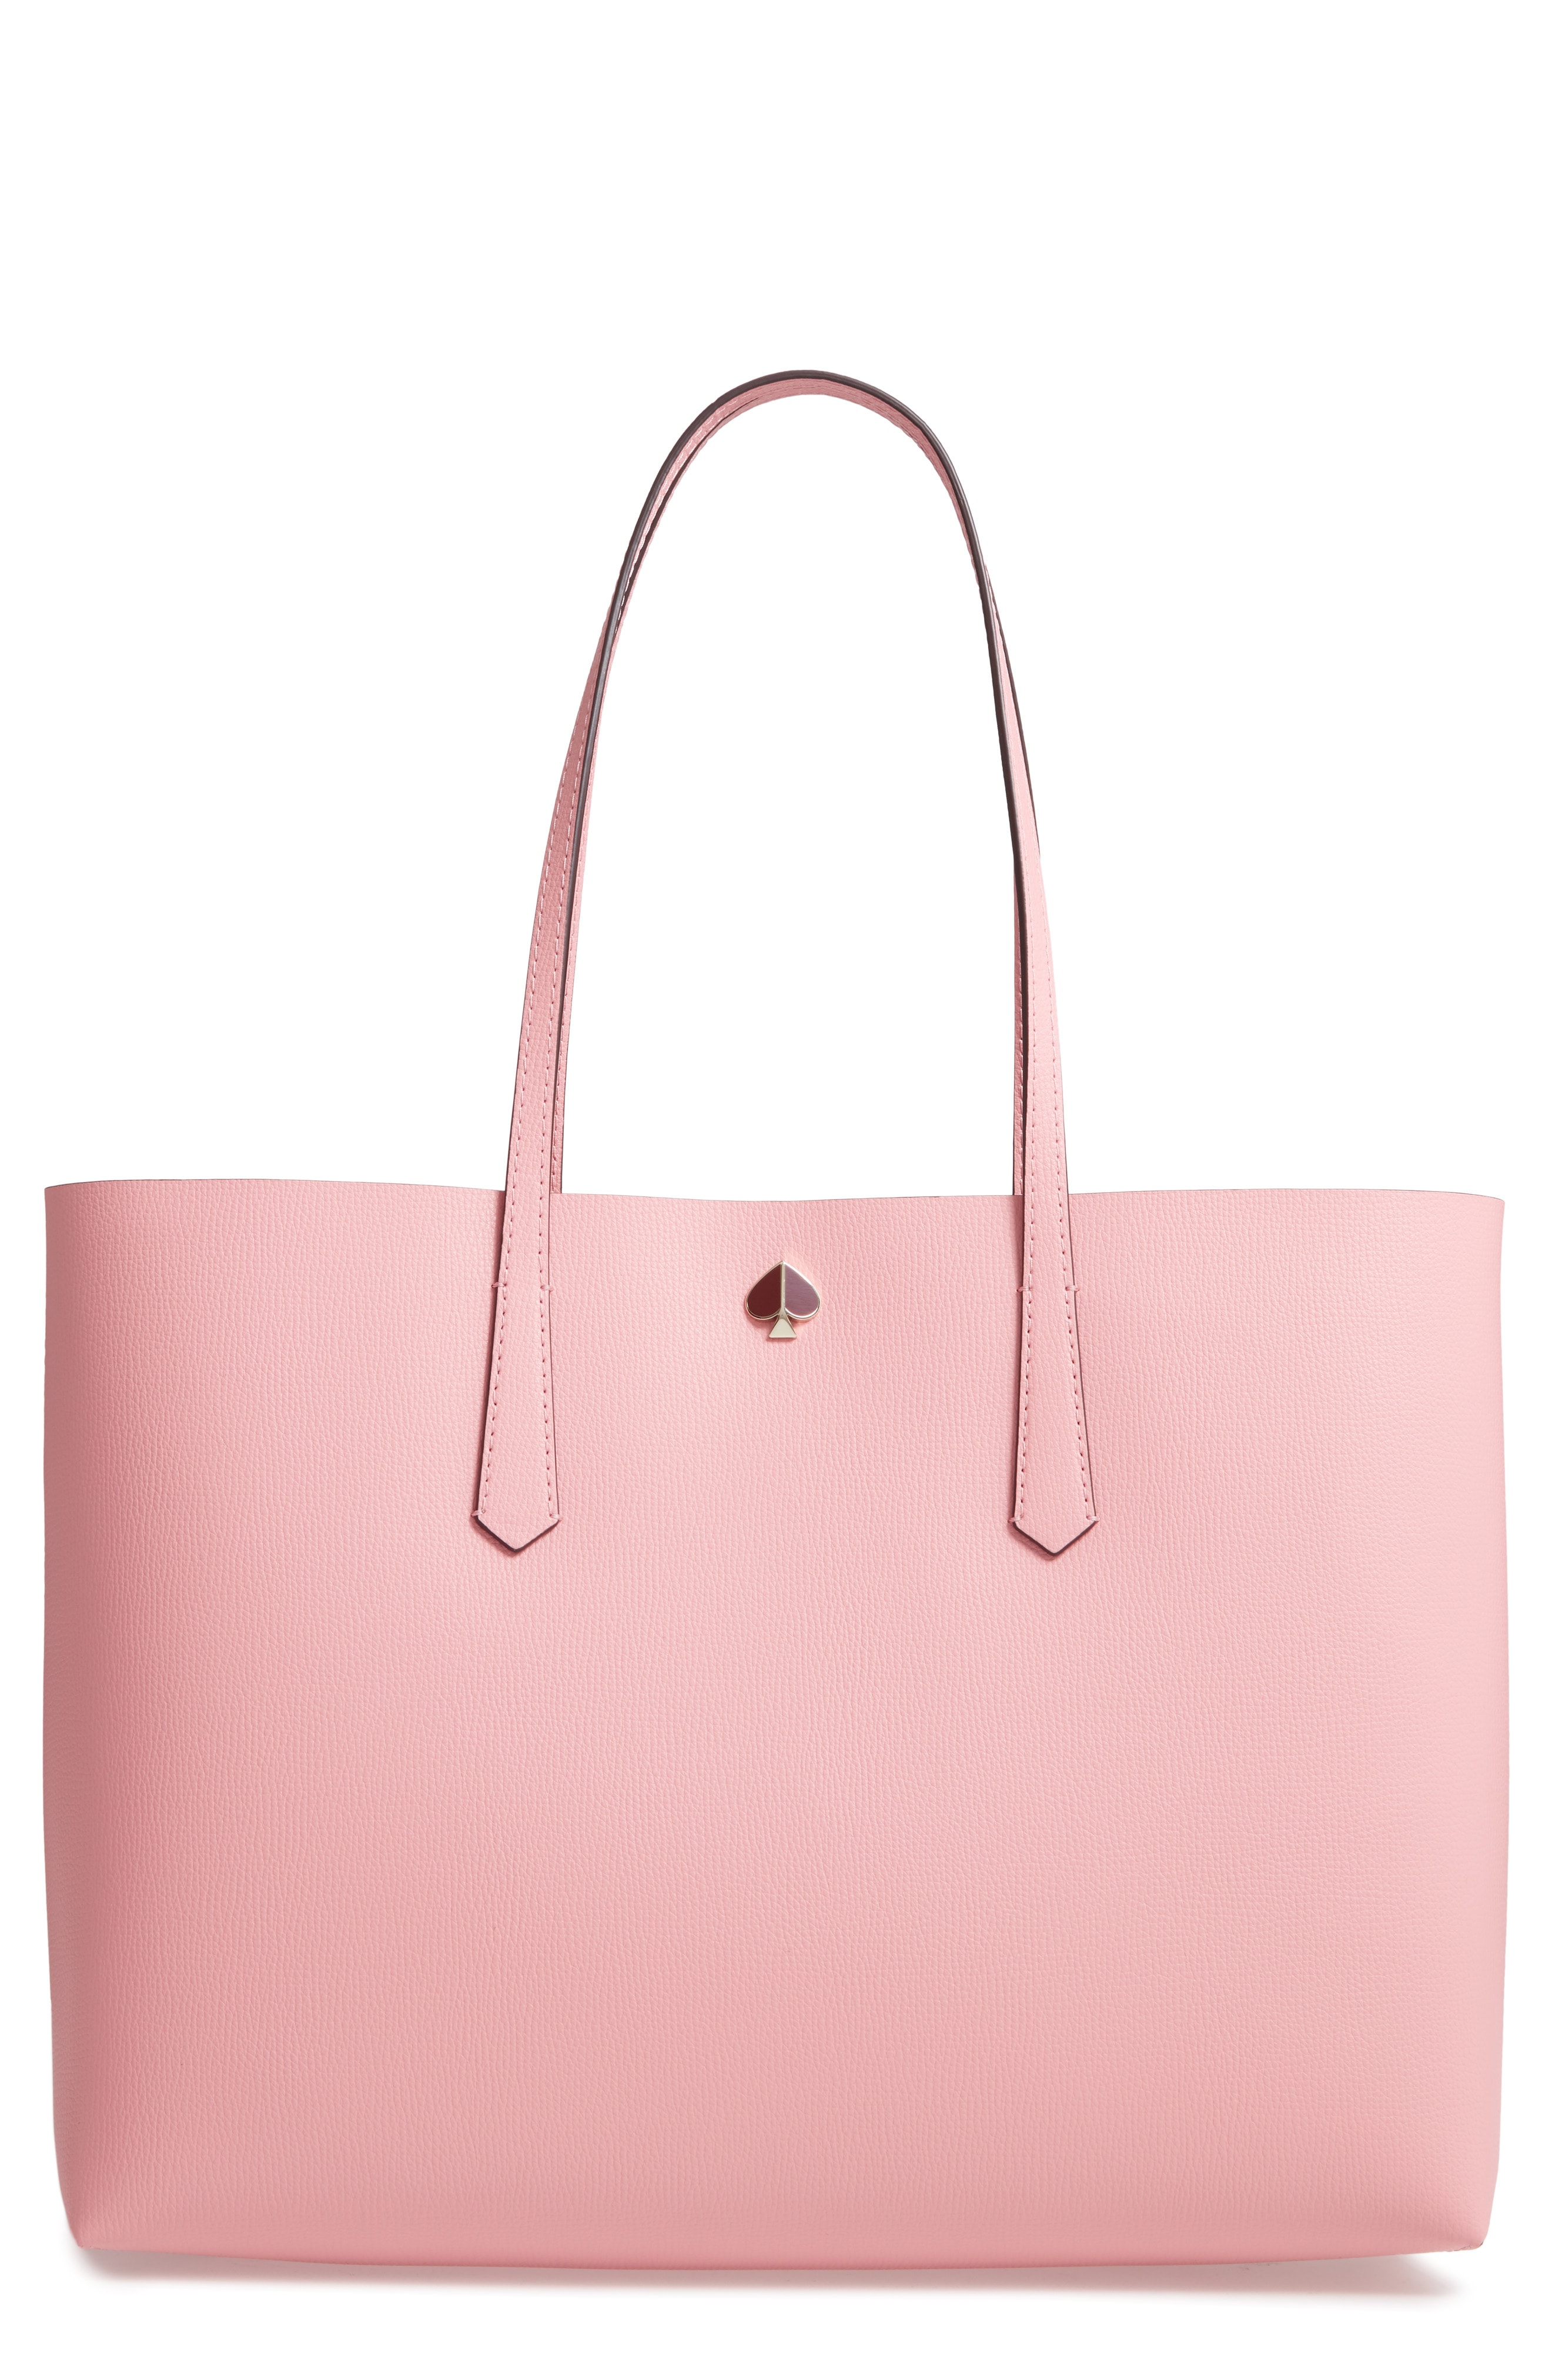 Pink Handbags & Purses | Nordstrom